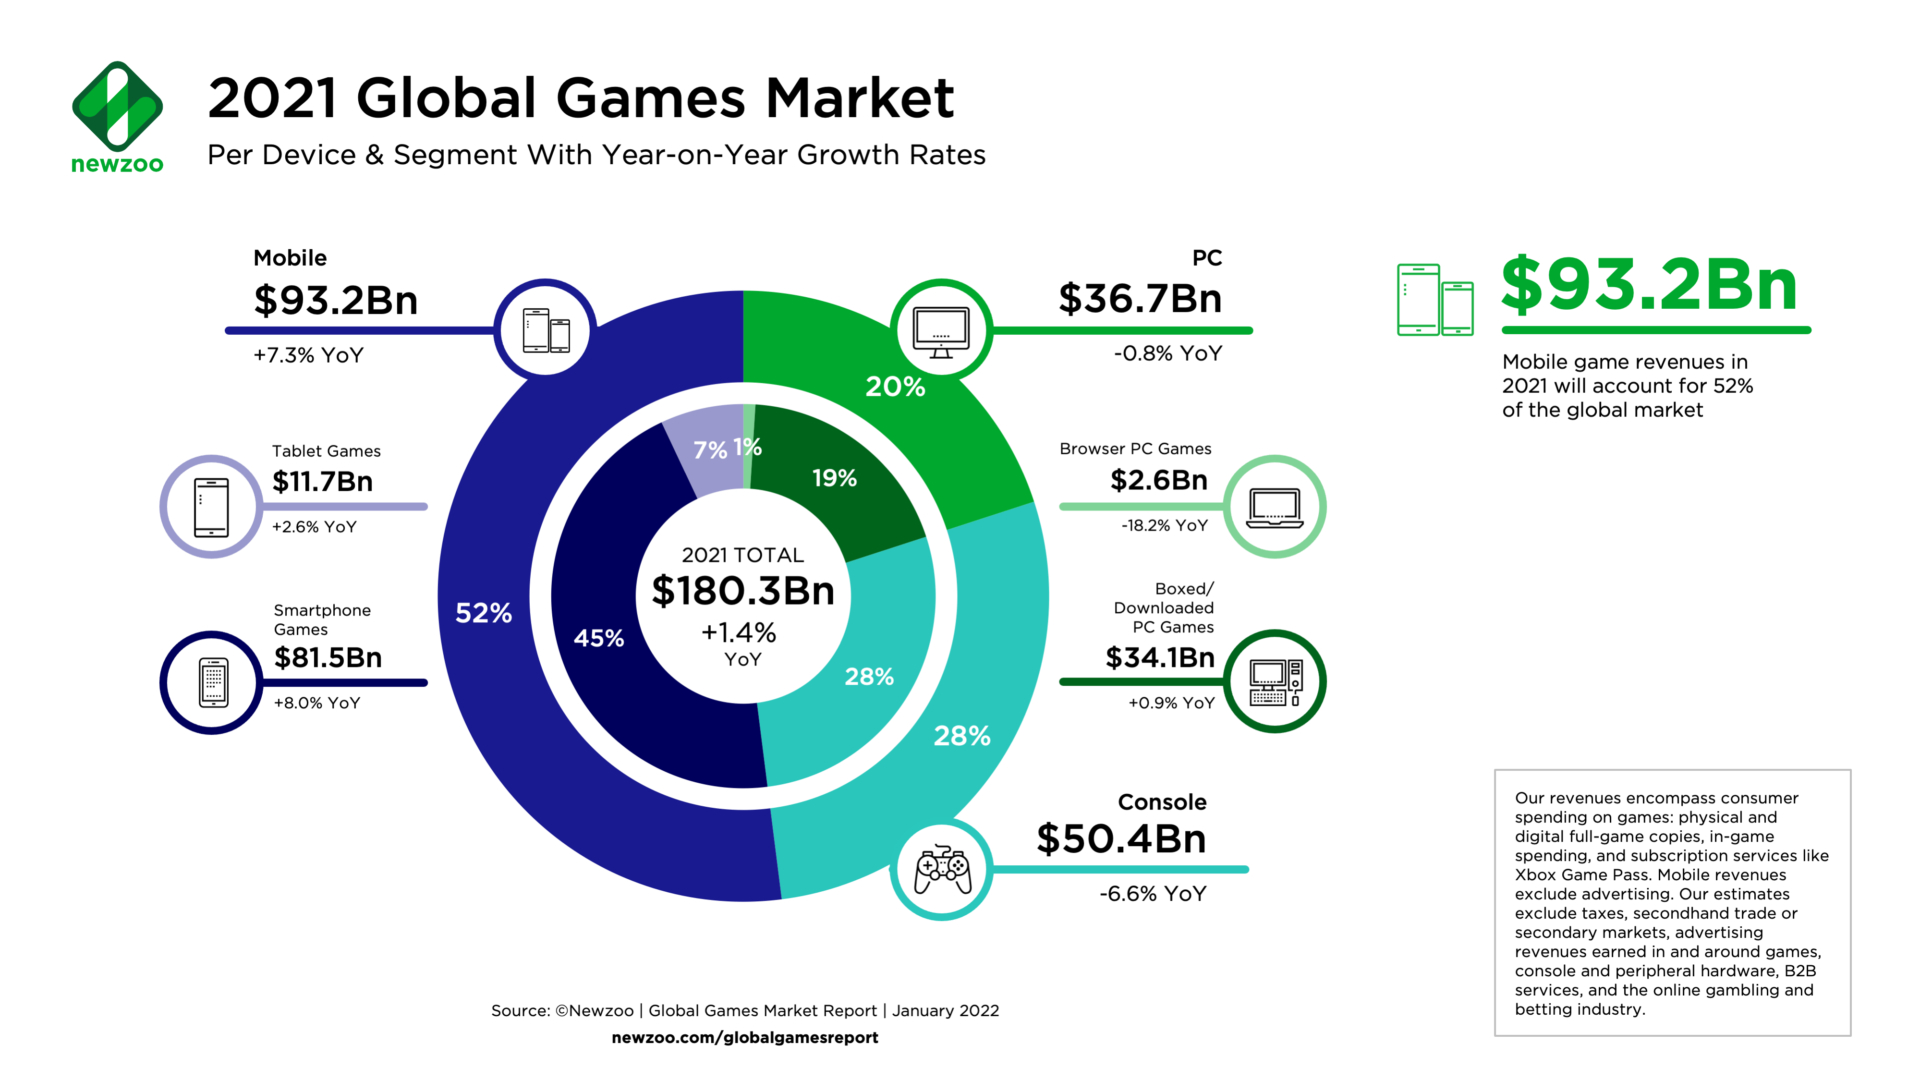 Jogos em Nuvem: O que muda no Mercado de Games? - GoGamers - O lado  acadêmico e business do mercado de games